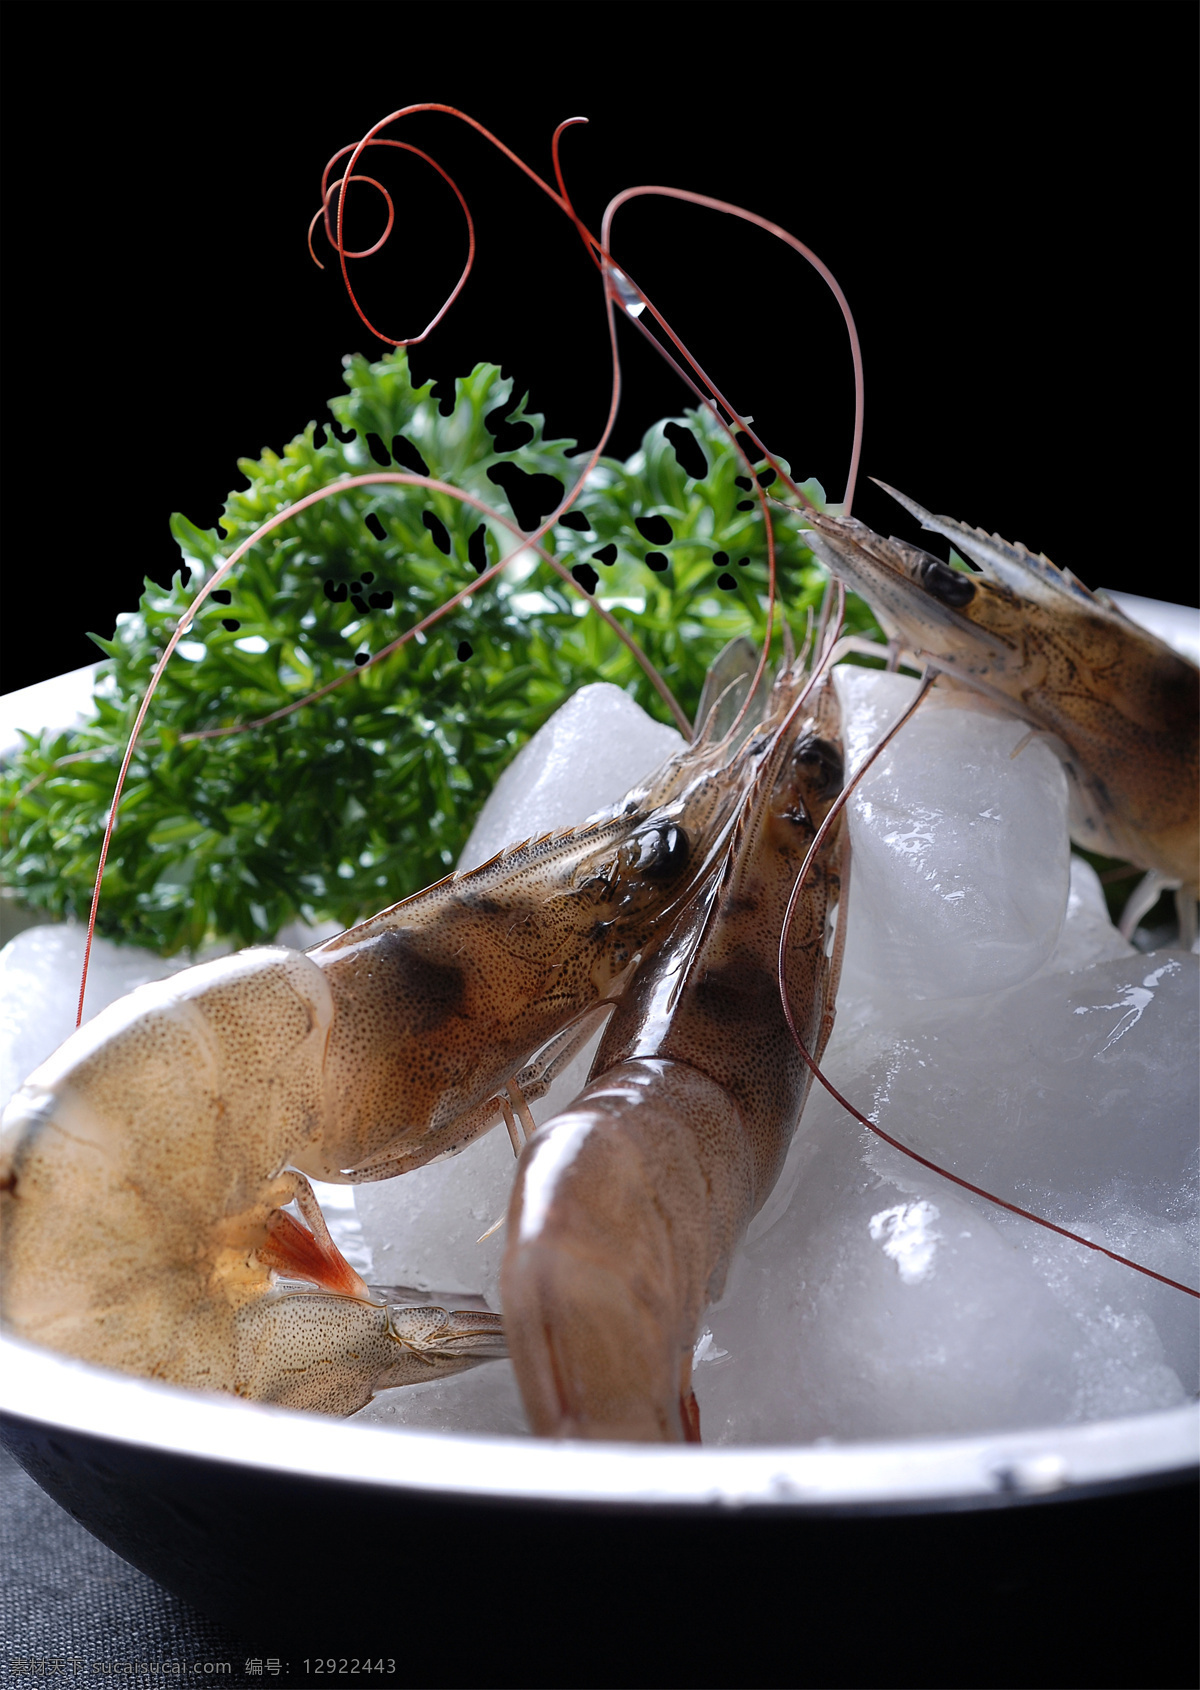 海鲜基围虾 美食 传统美食 餐饮美食 高清菜谱用图